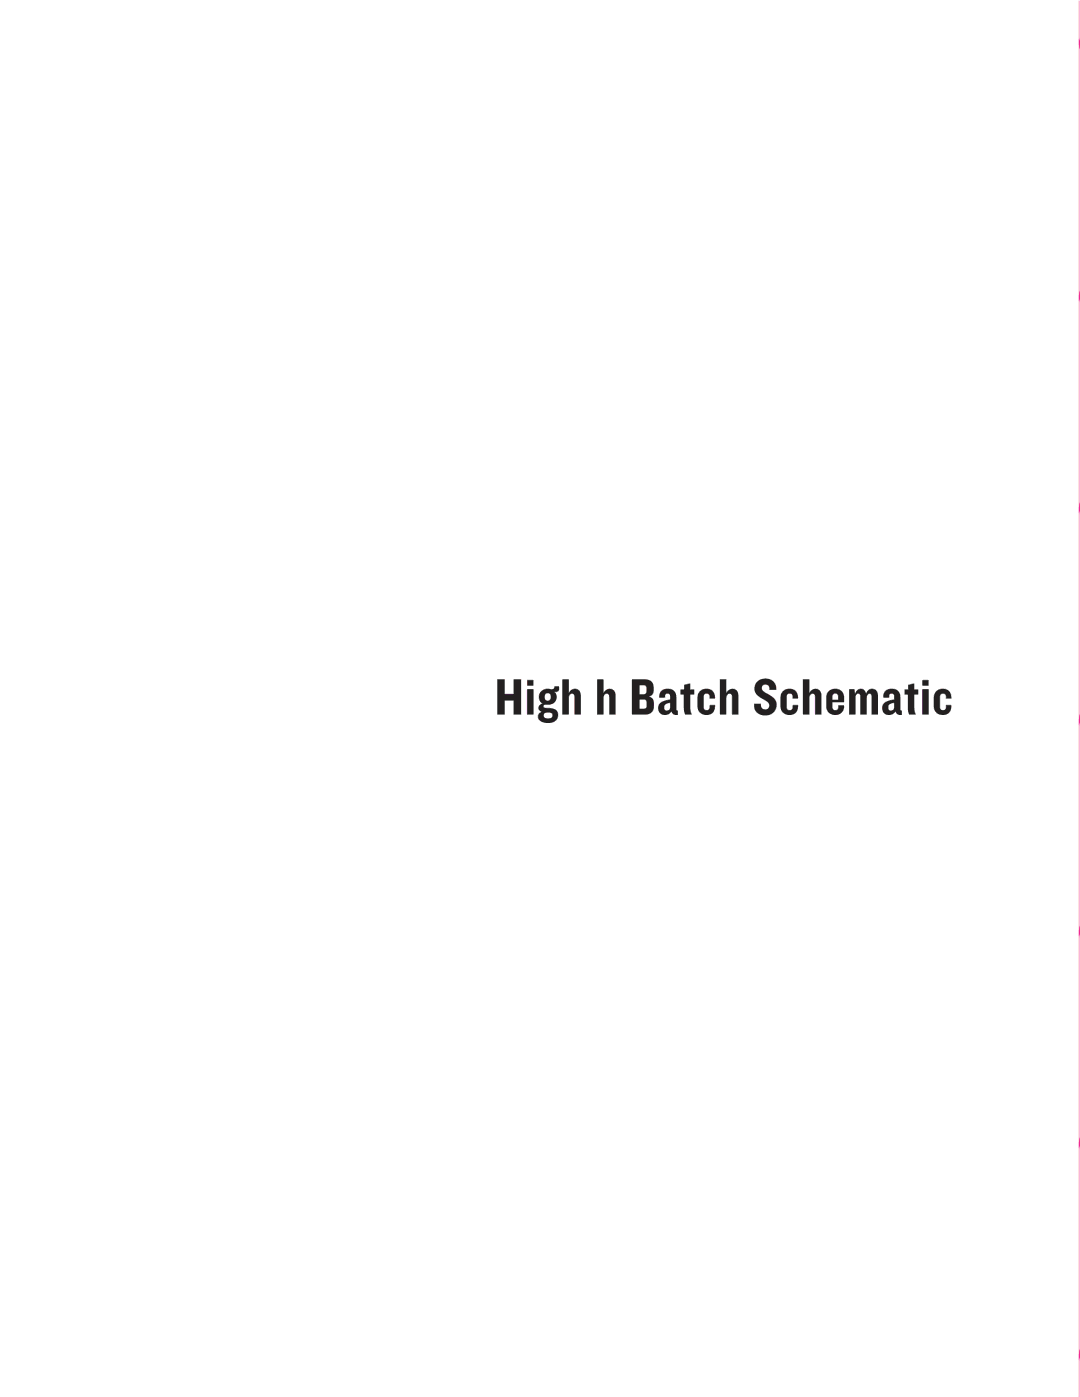 Turbo Chef Technologies HHB-8085, HHB-8136, HHB-8029, HHB-8028, HHB-8134, HHB-8115, HHB-8097, HHB-8099 High h Batch Schematic 